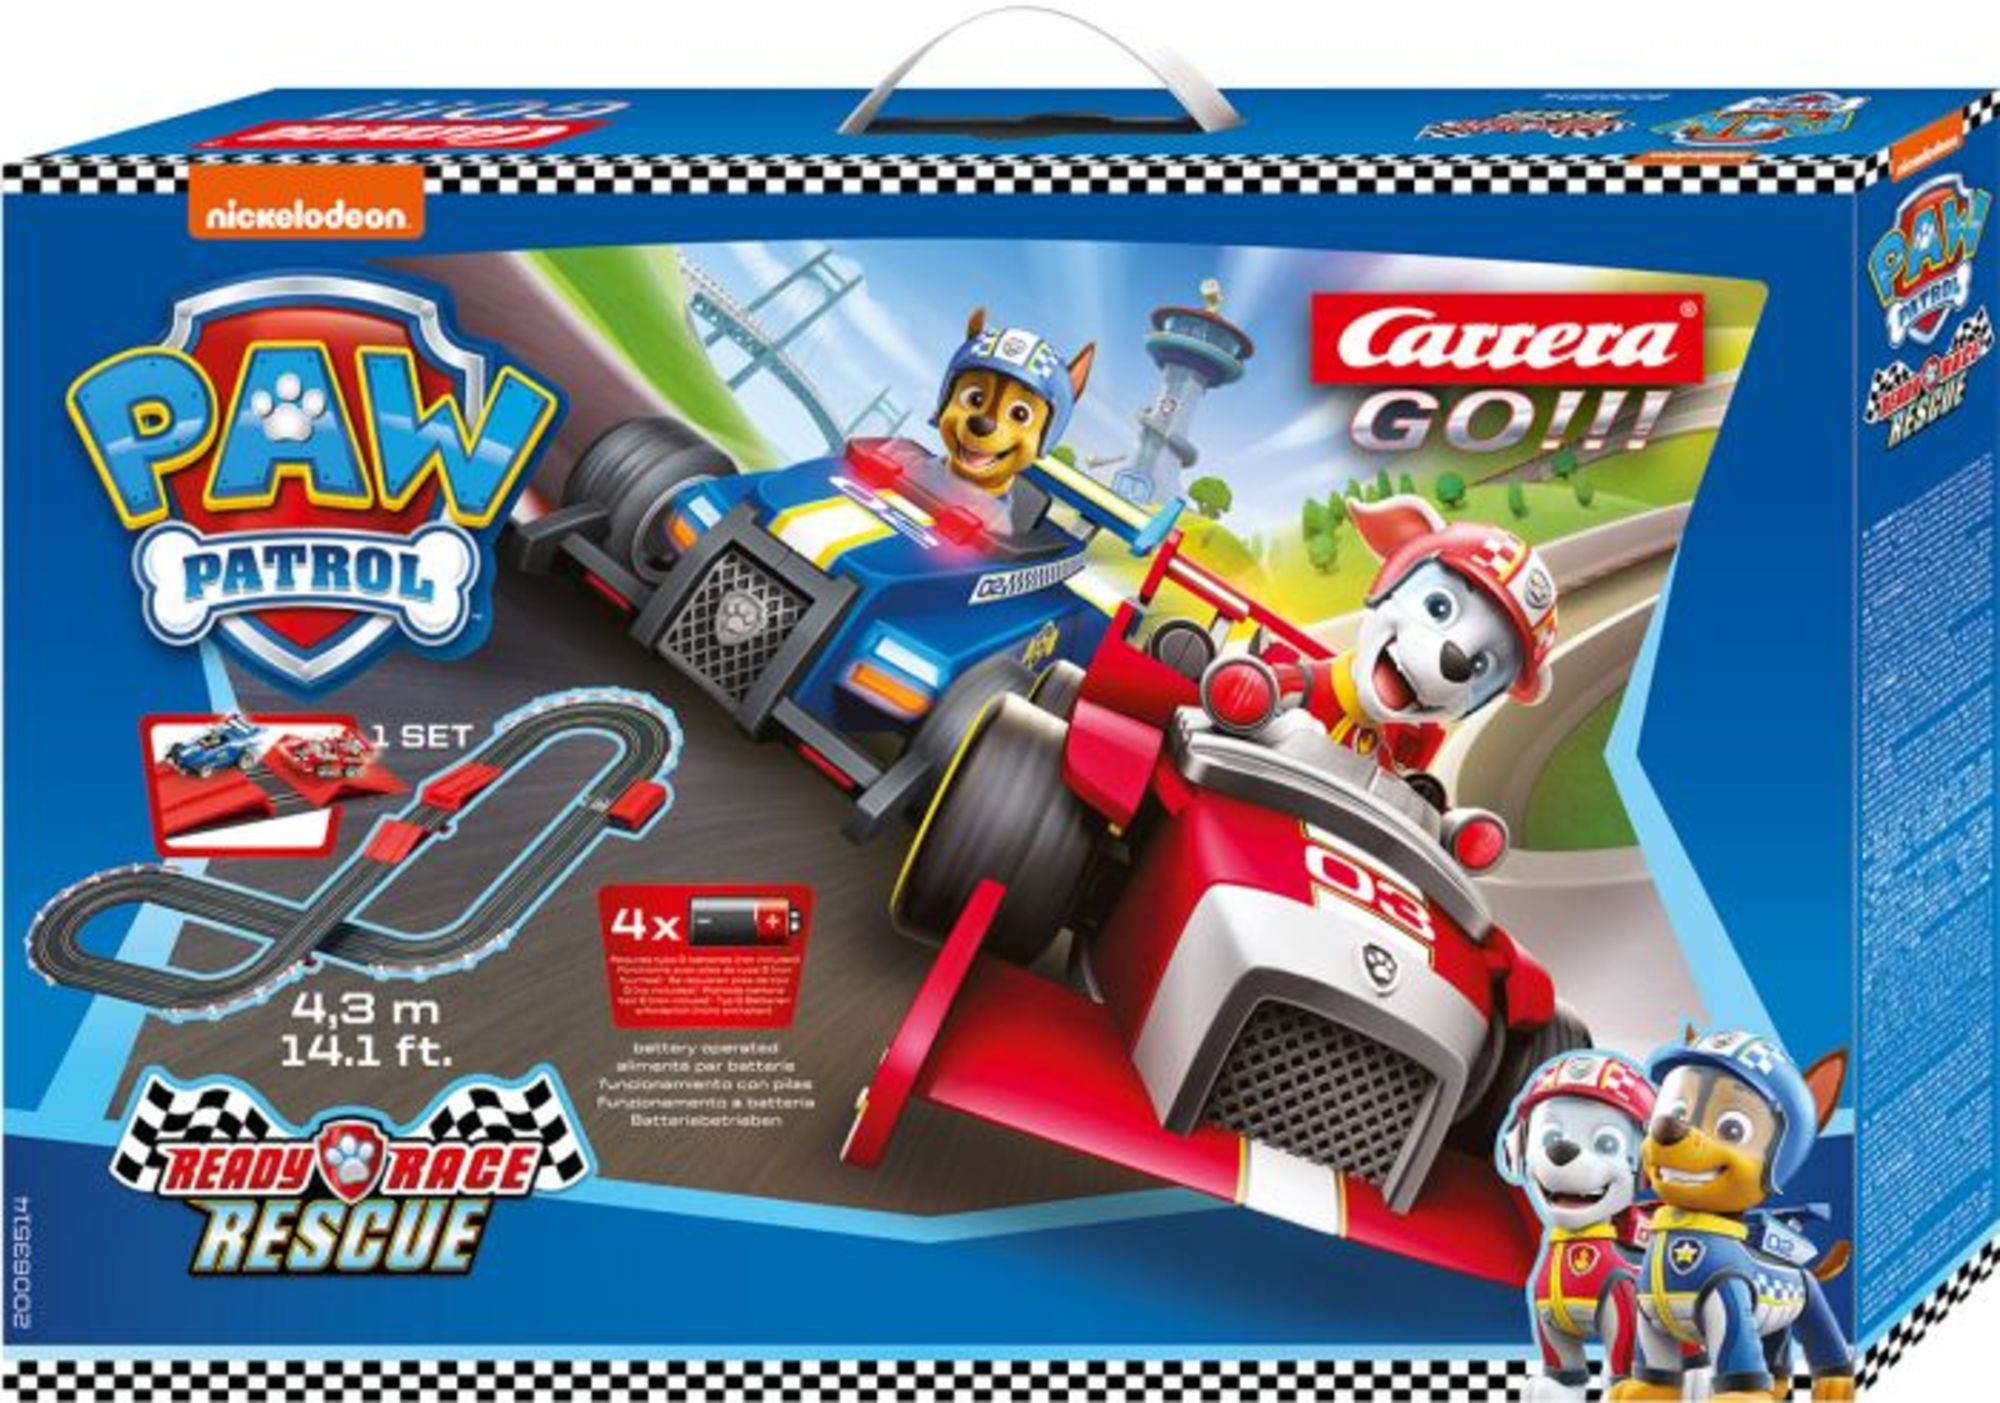 CARRERA GO!!! 20063514 - Paw Patrol Ready Race Rescue, Autorennbahn,  batteriebetrieben, 2 Autos' kaufen - Spielwaren